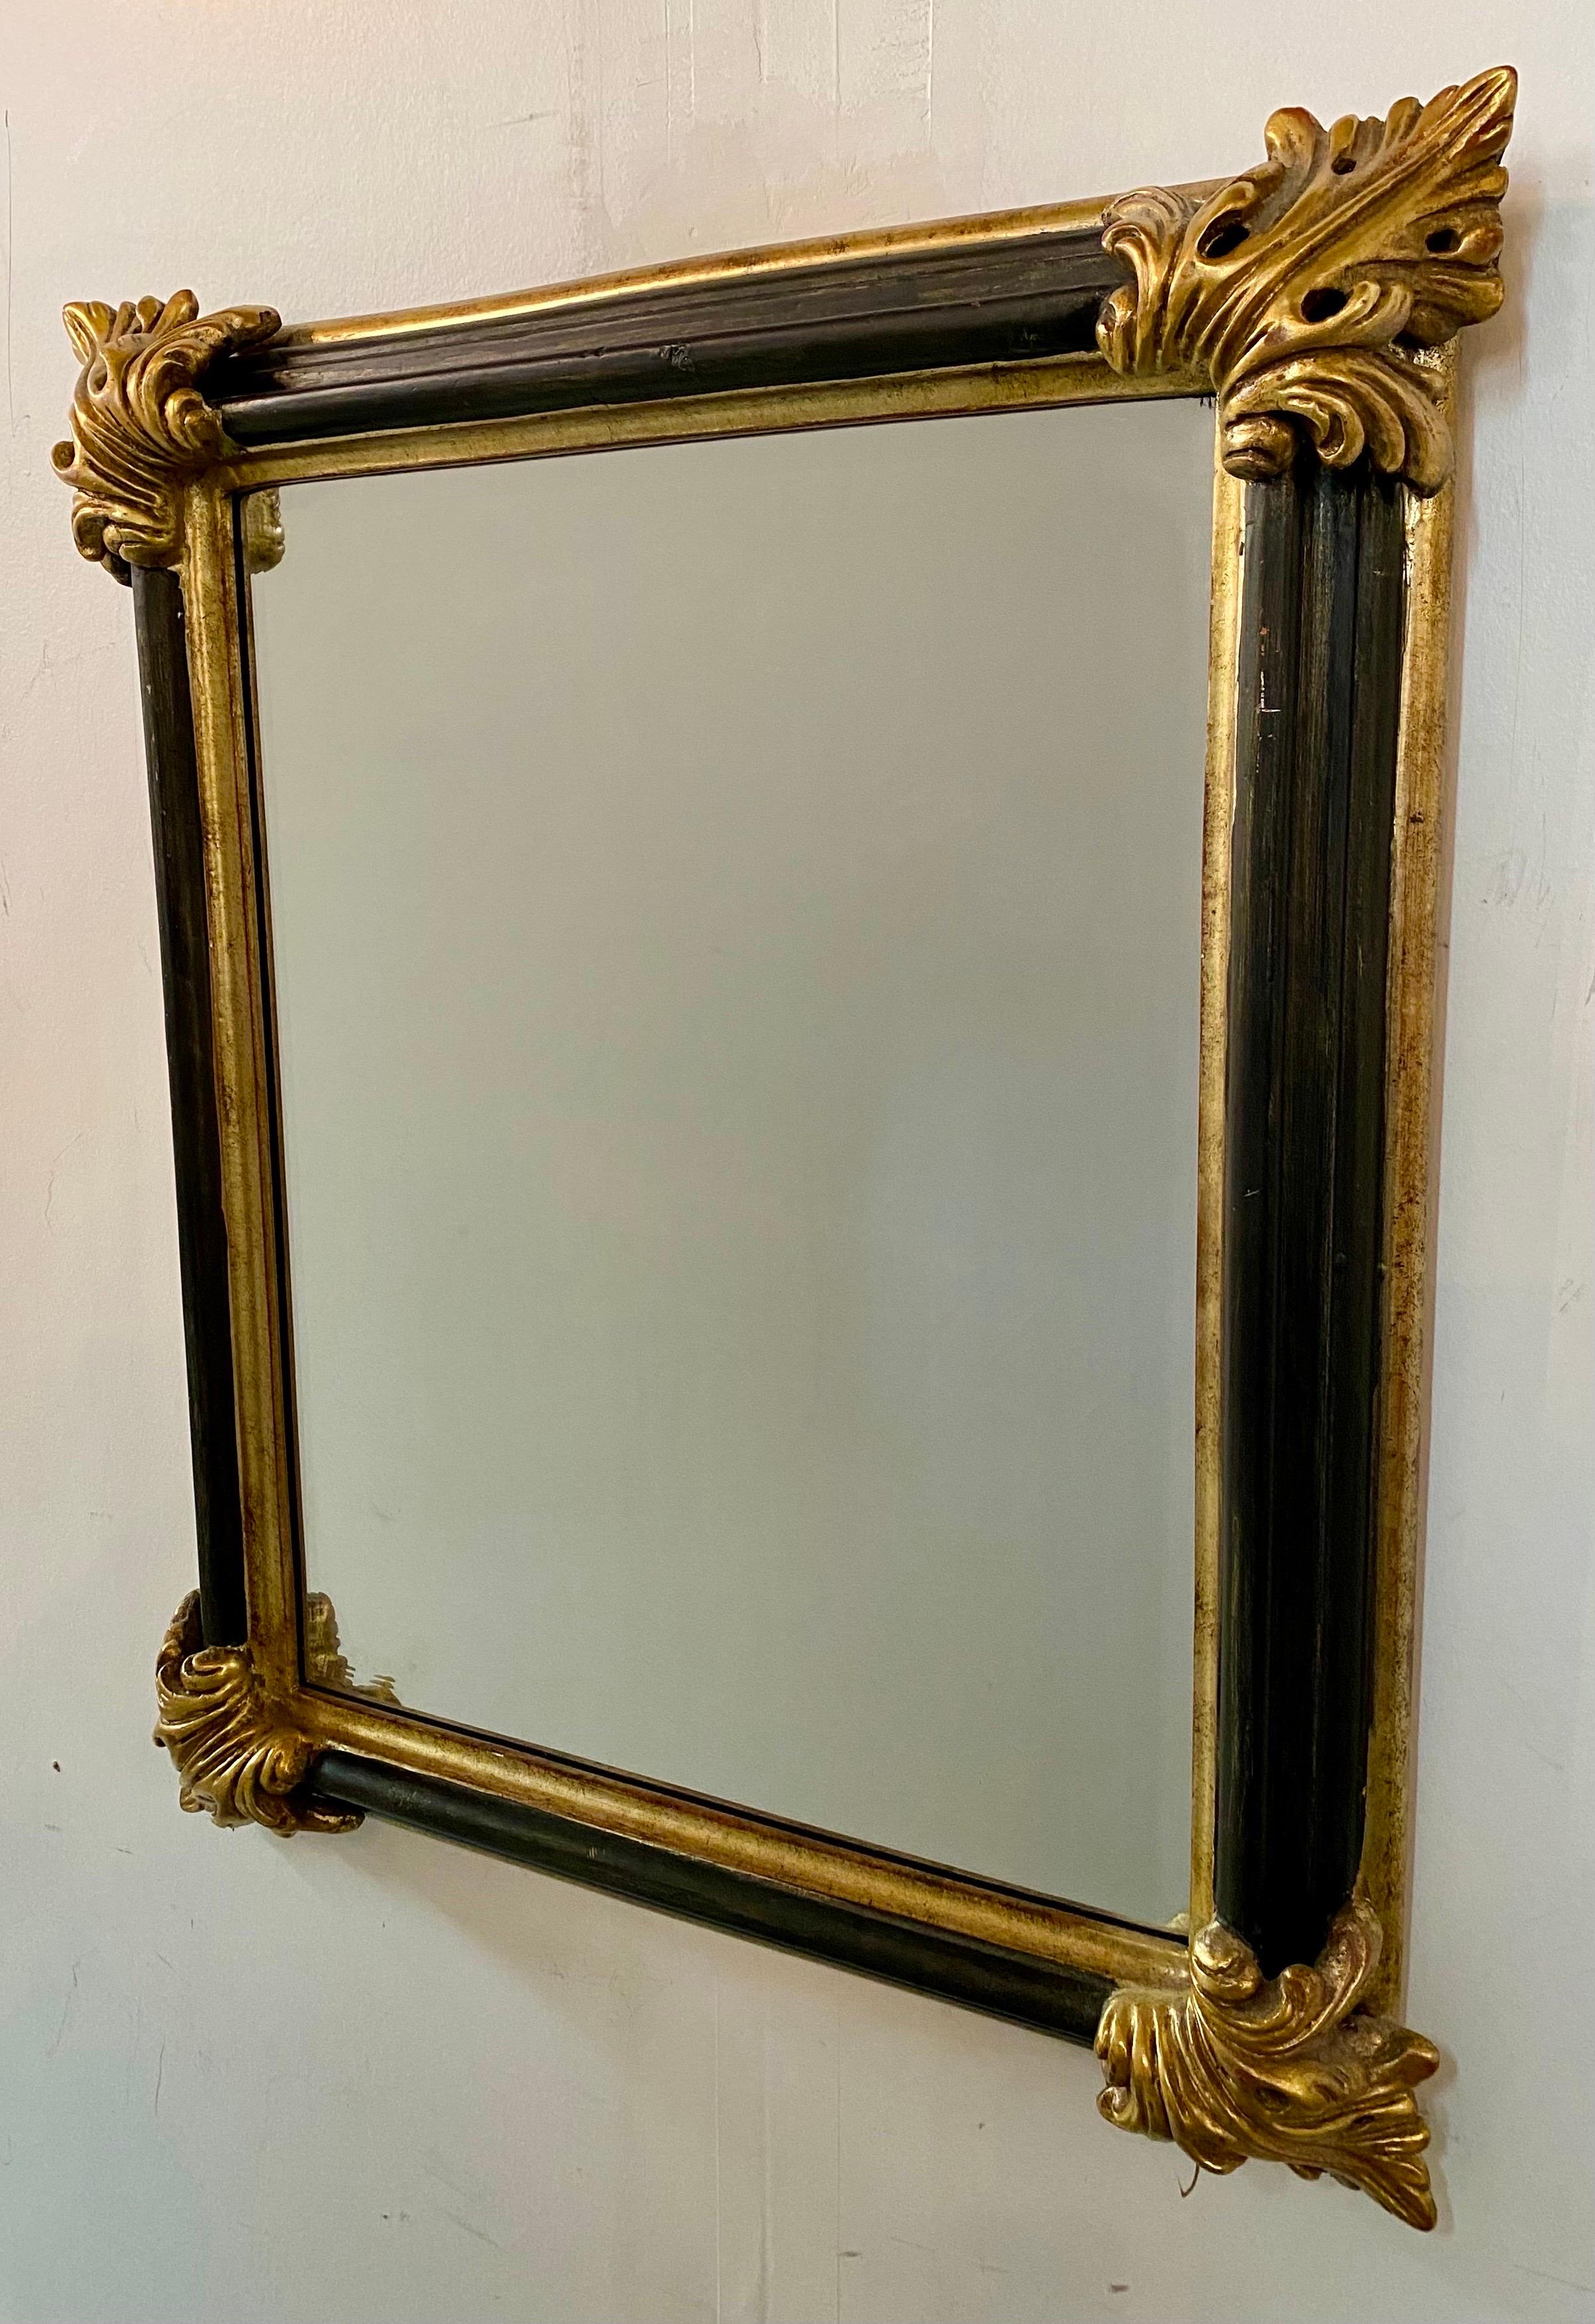 Ein eleganter rechteckiger Spiegel im französischen Rokokostil.  Der robuste und gut verarbeitete Spiegel hat einen schwarzen Ebenholzrahmen, der mit Gold vergoldet ist. Jede Ecke zeigt ein großes Blattgoldmuster, das dem Stück Stil verleiht. Der